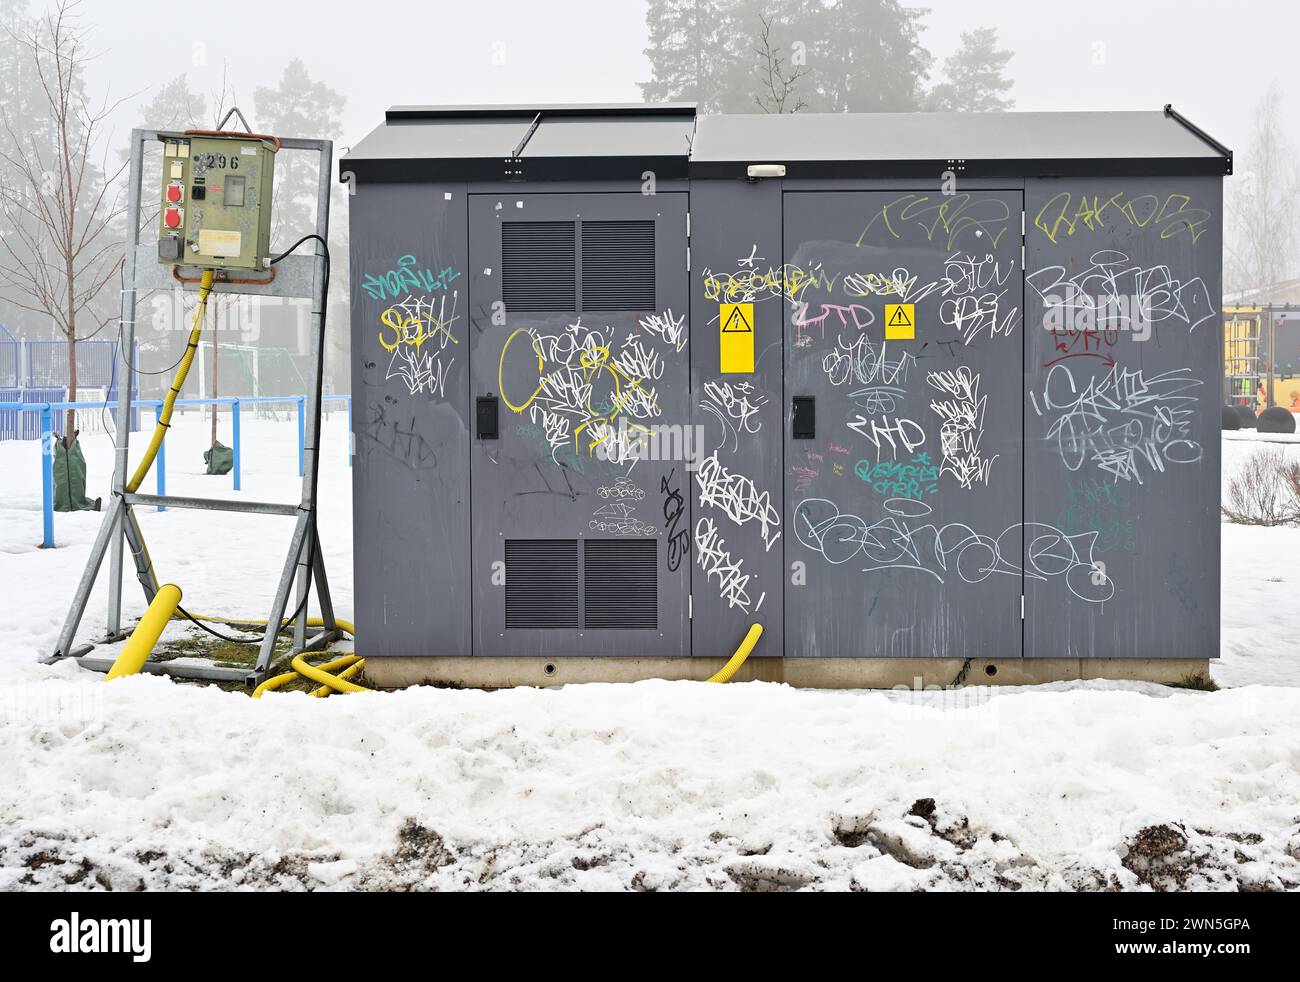 Ein Stromversorgungskasten ist mit verschiedenen Graffiti-Tags bedeckt und steht in einer schneebedeckten Landschaft mit Nebel im Hintergrund Stockfoto